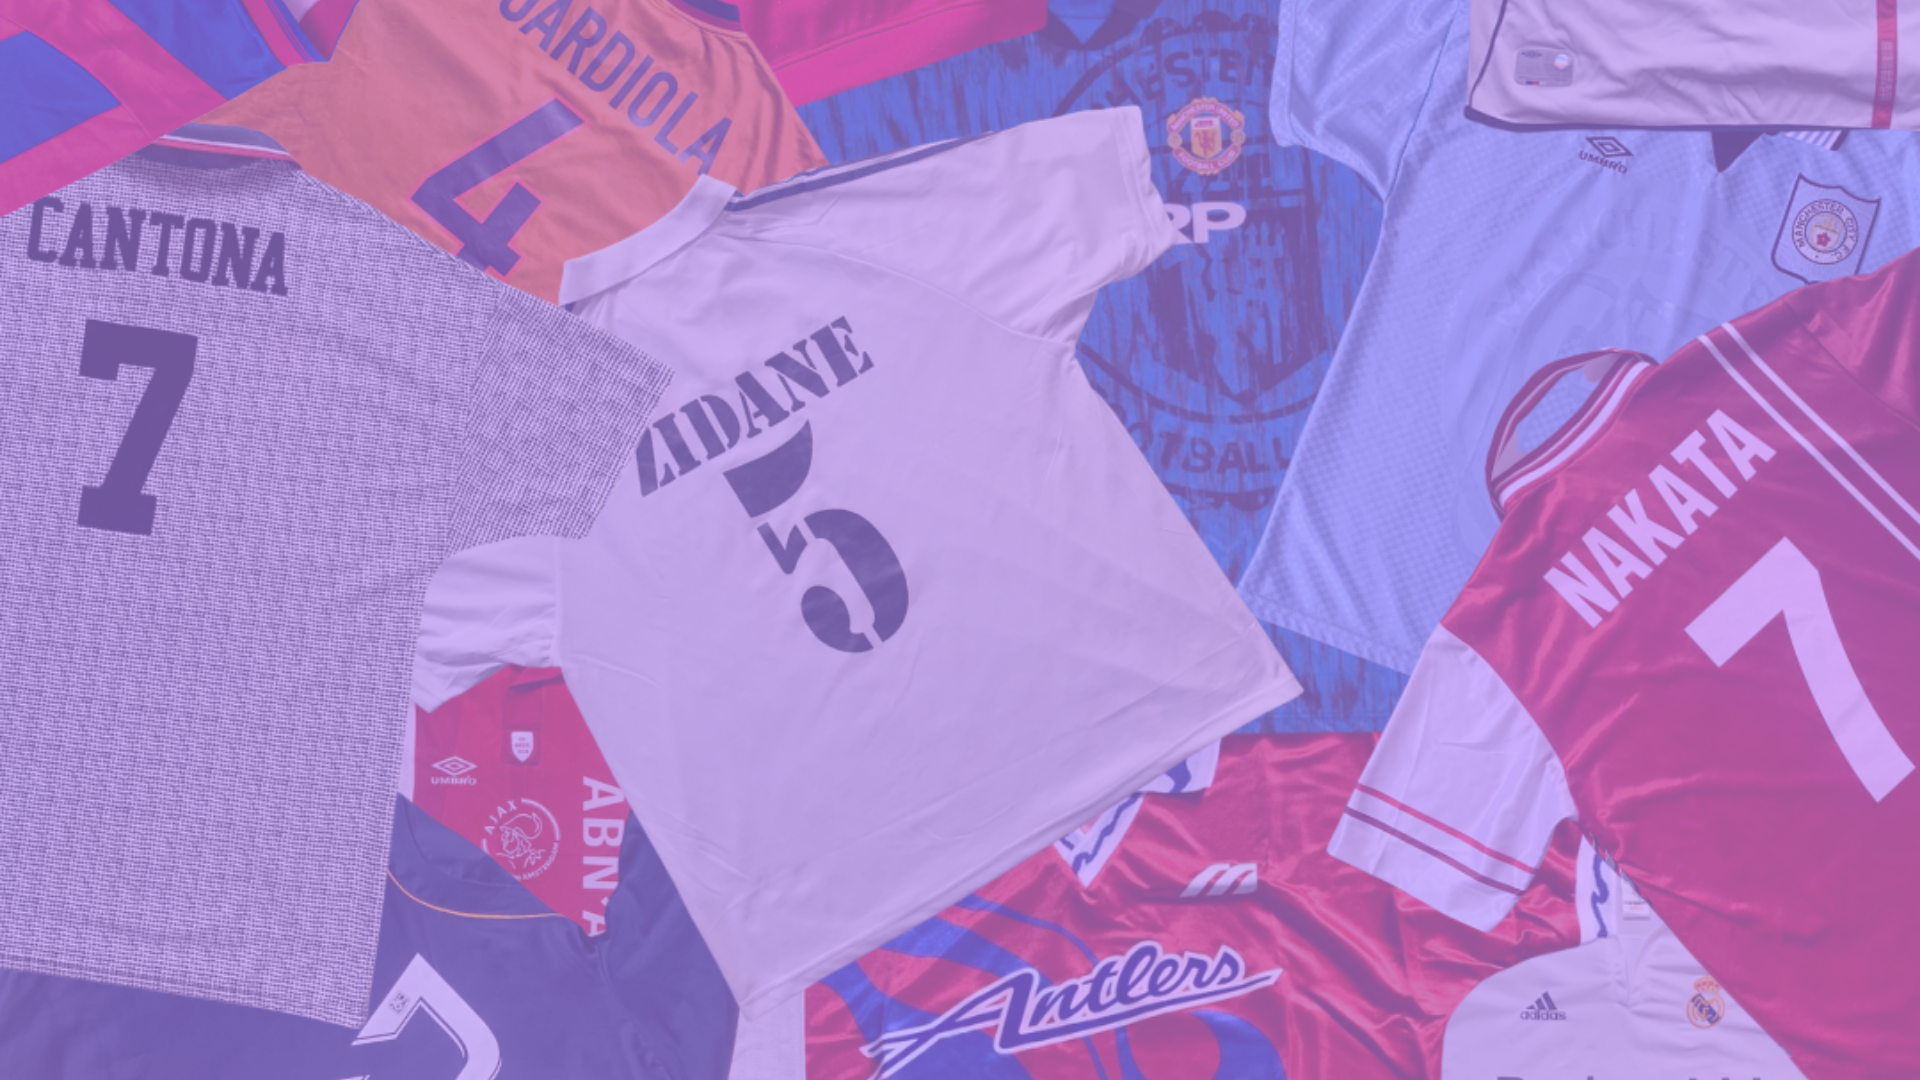 Top 10 football shirt brands